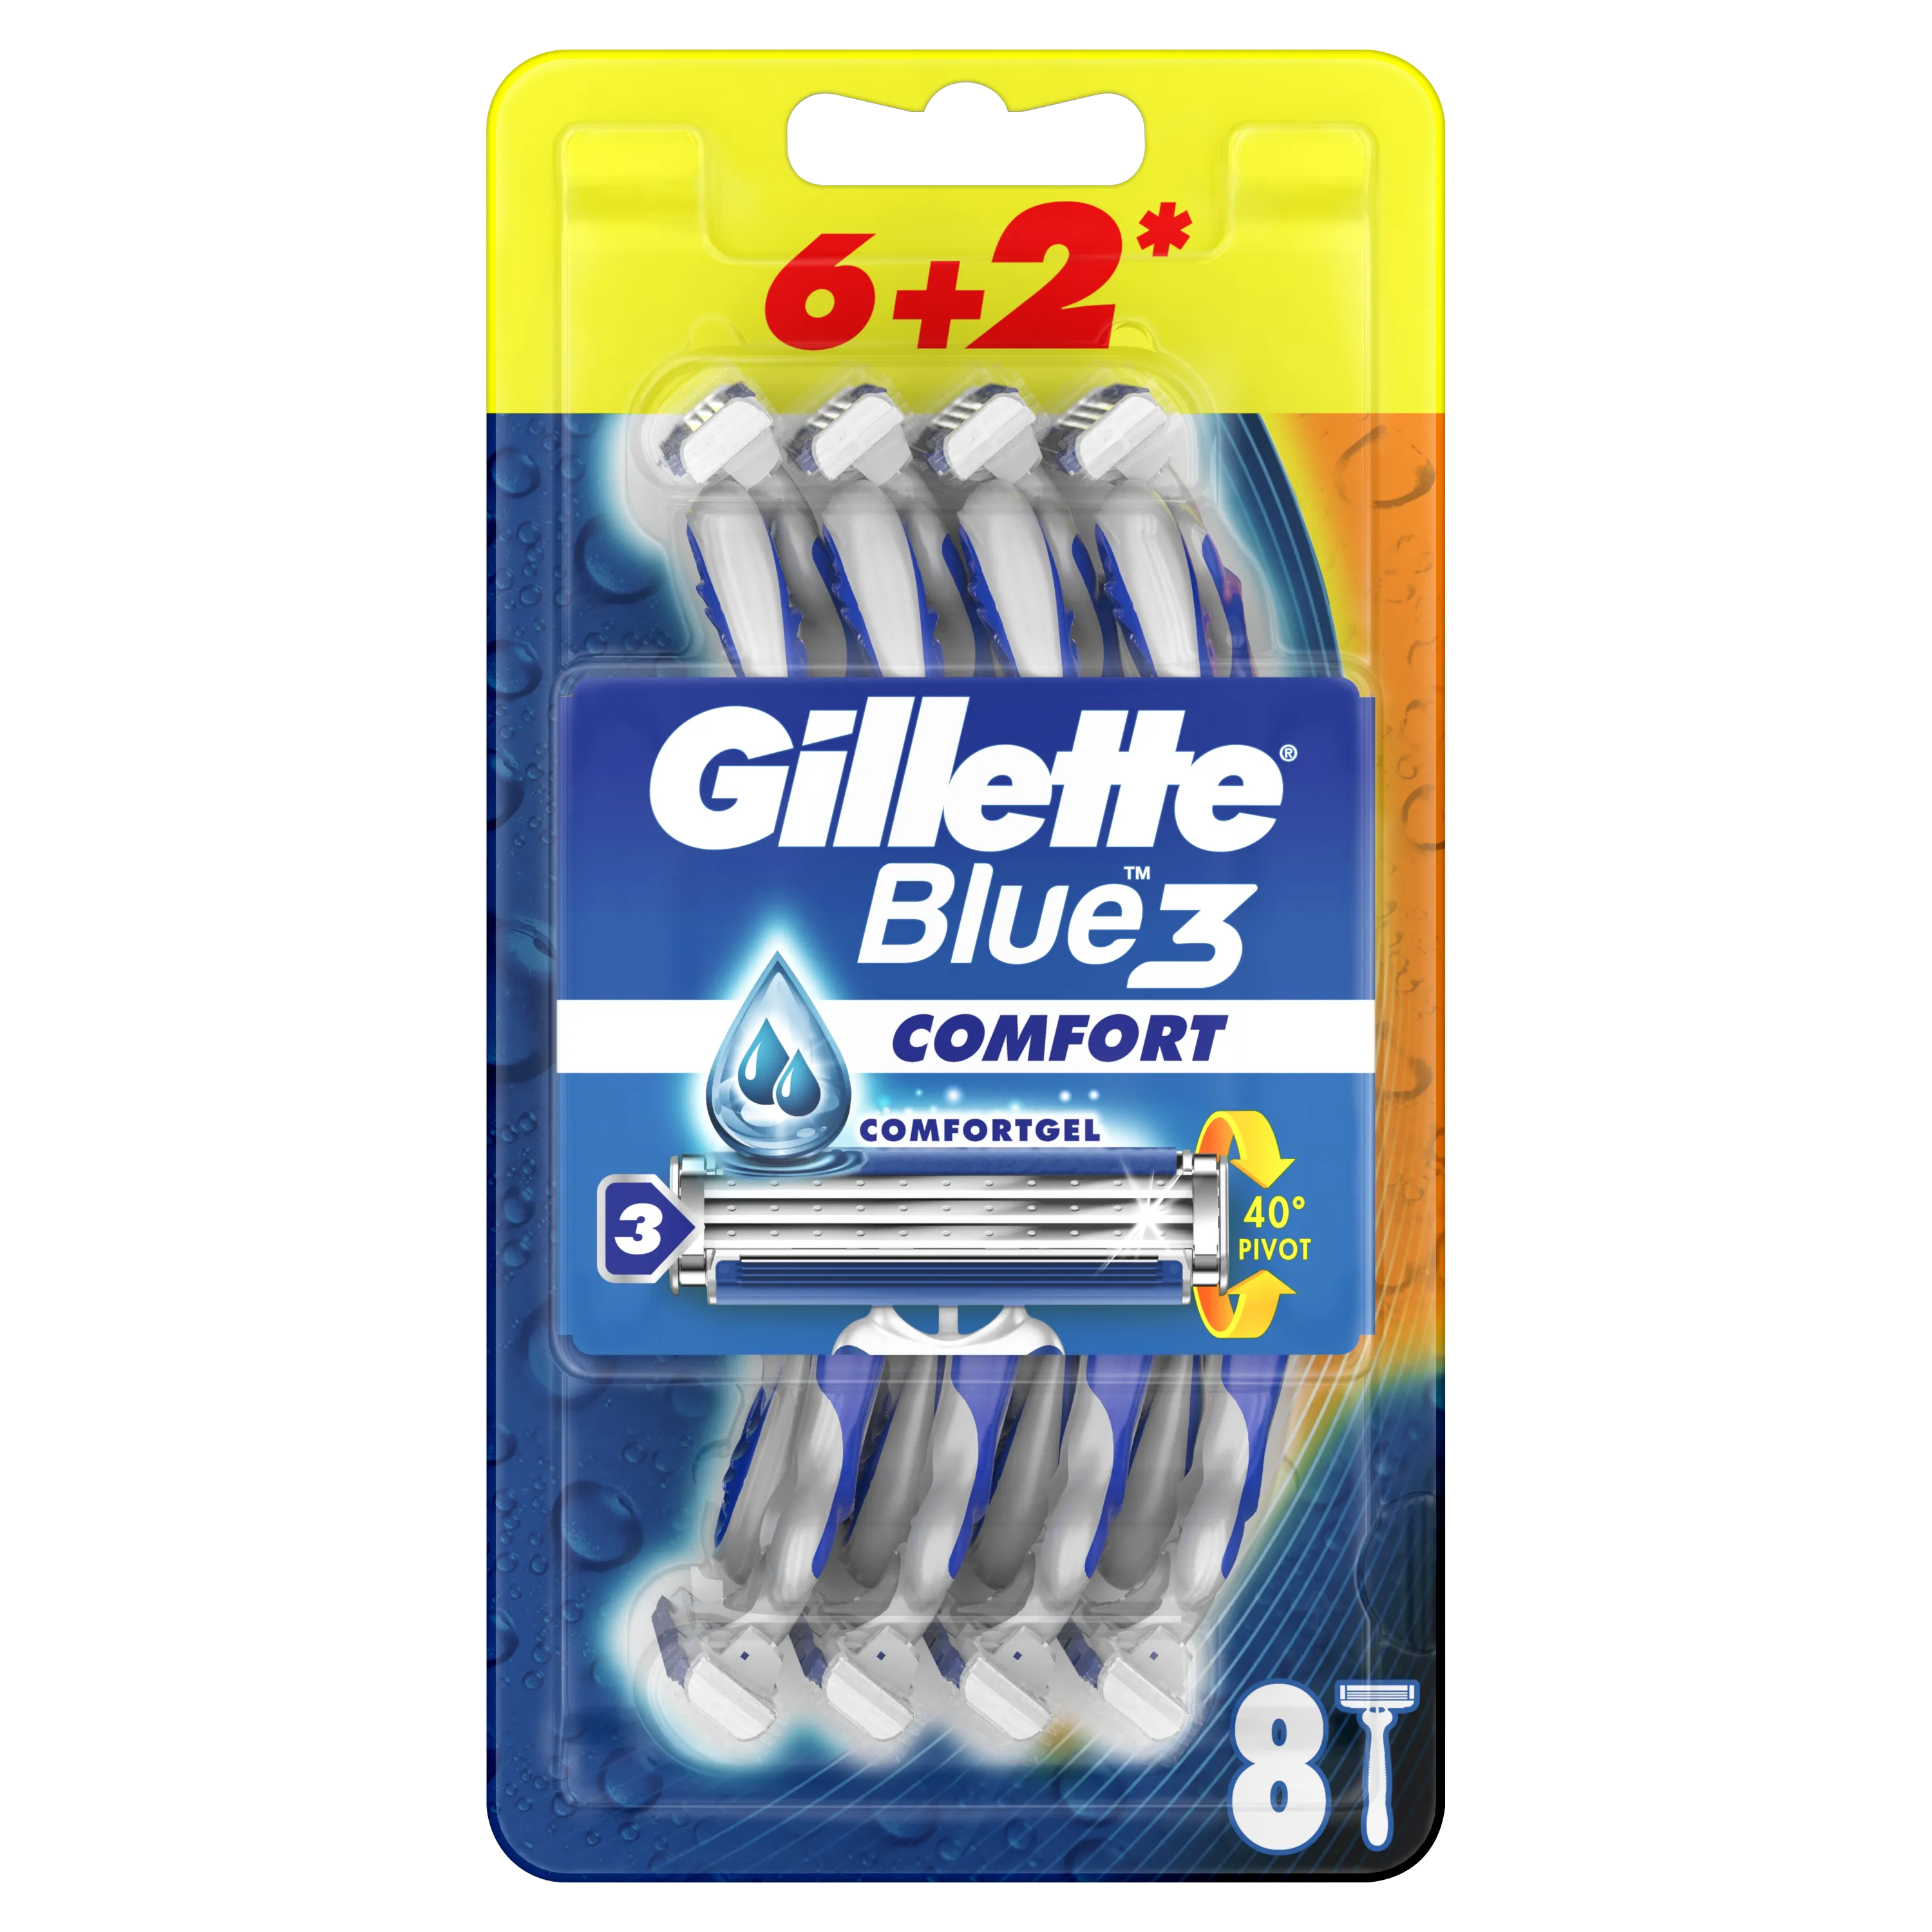 Gillette Blue3 Comfort Jednorazowa maszynka do golenia dla mężczyzn, 6+2 szt.